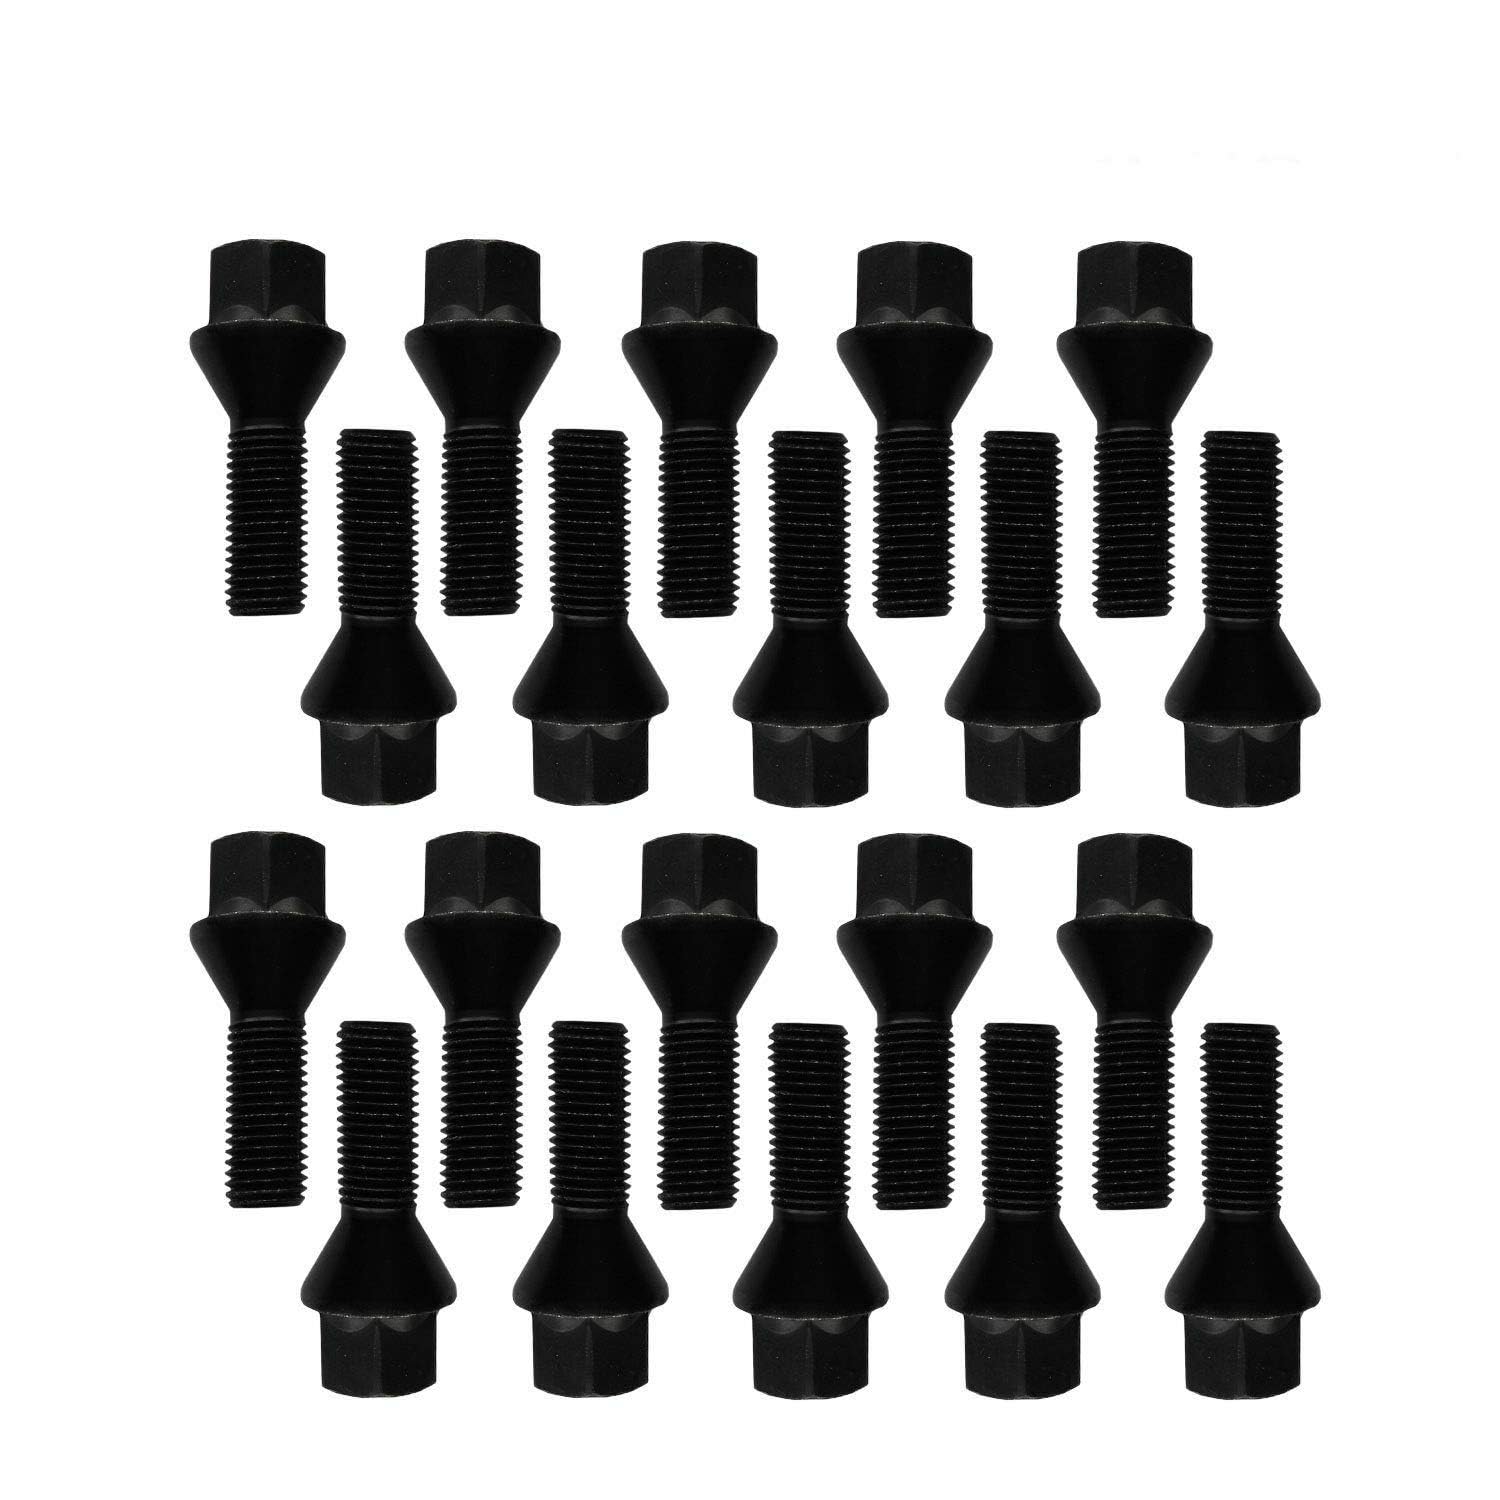 20 Radschrauben Radbolzen Kegelbund schwarz M12x1,25 30mm